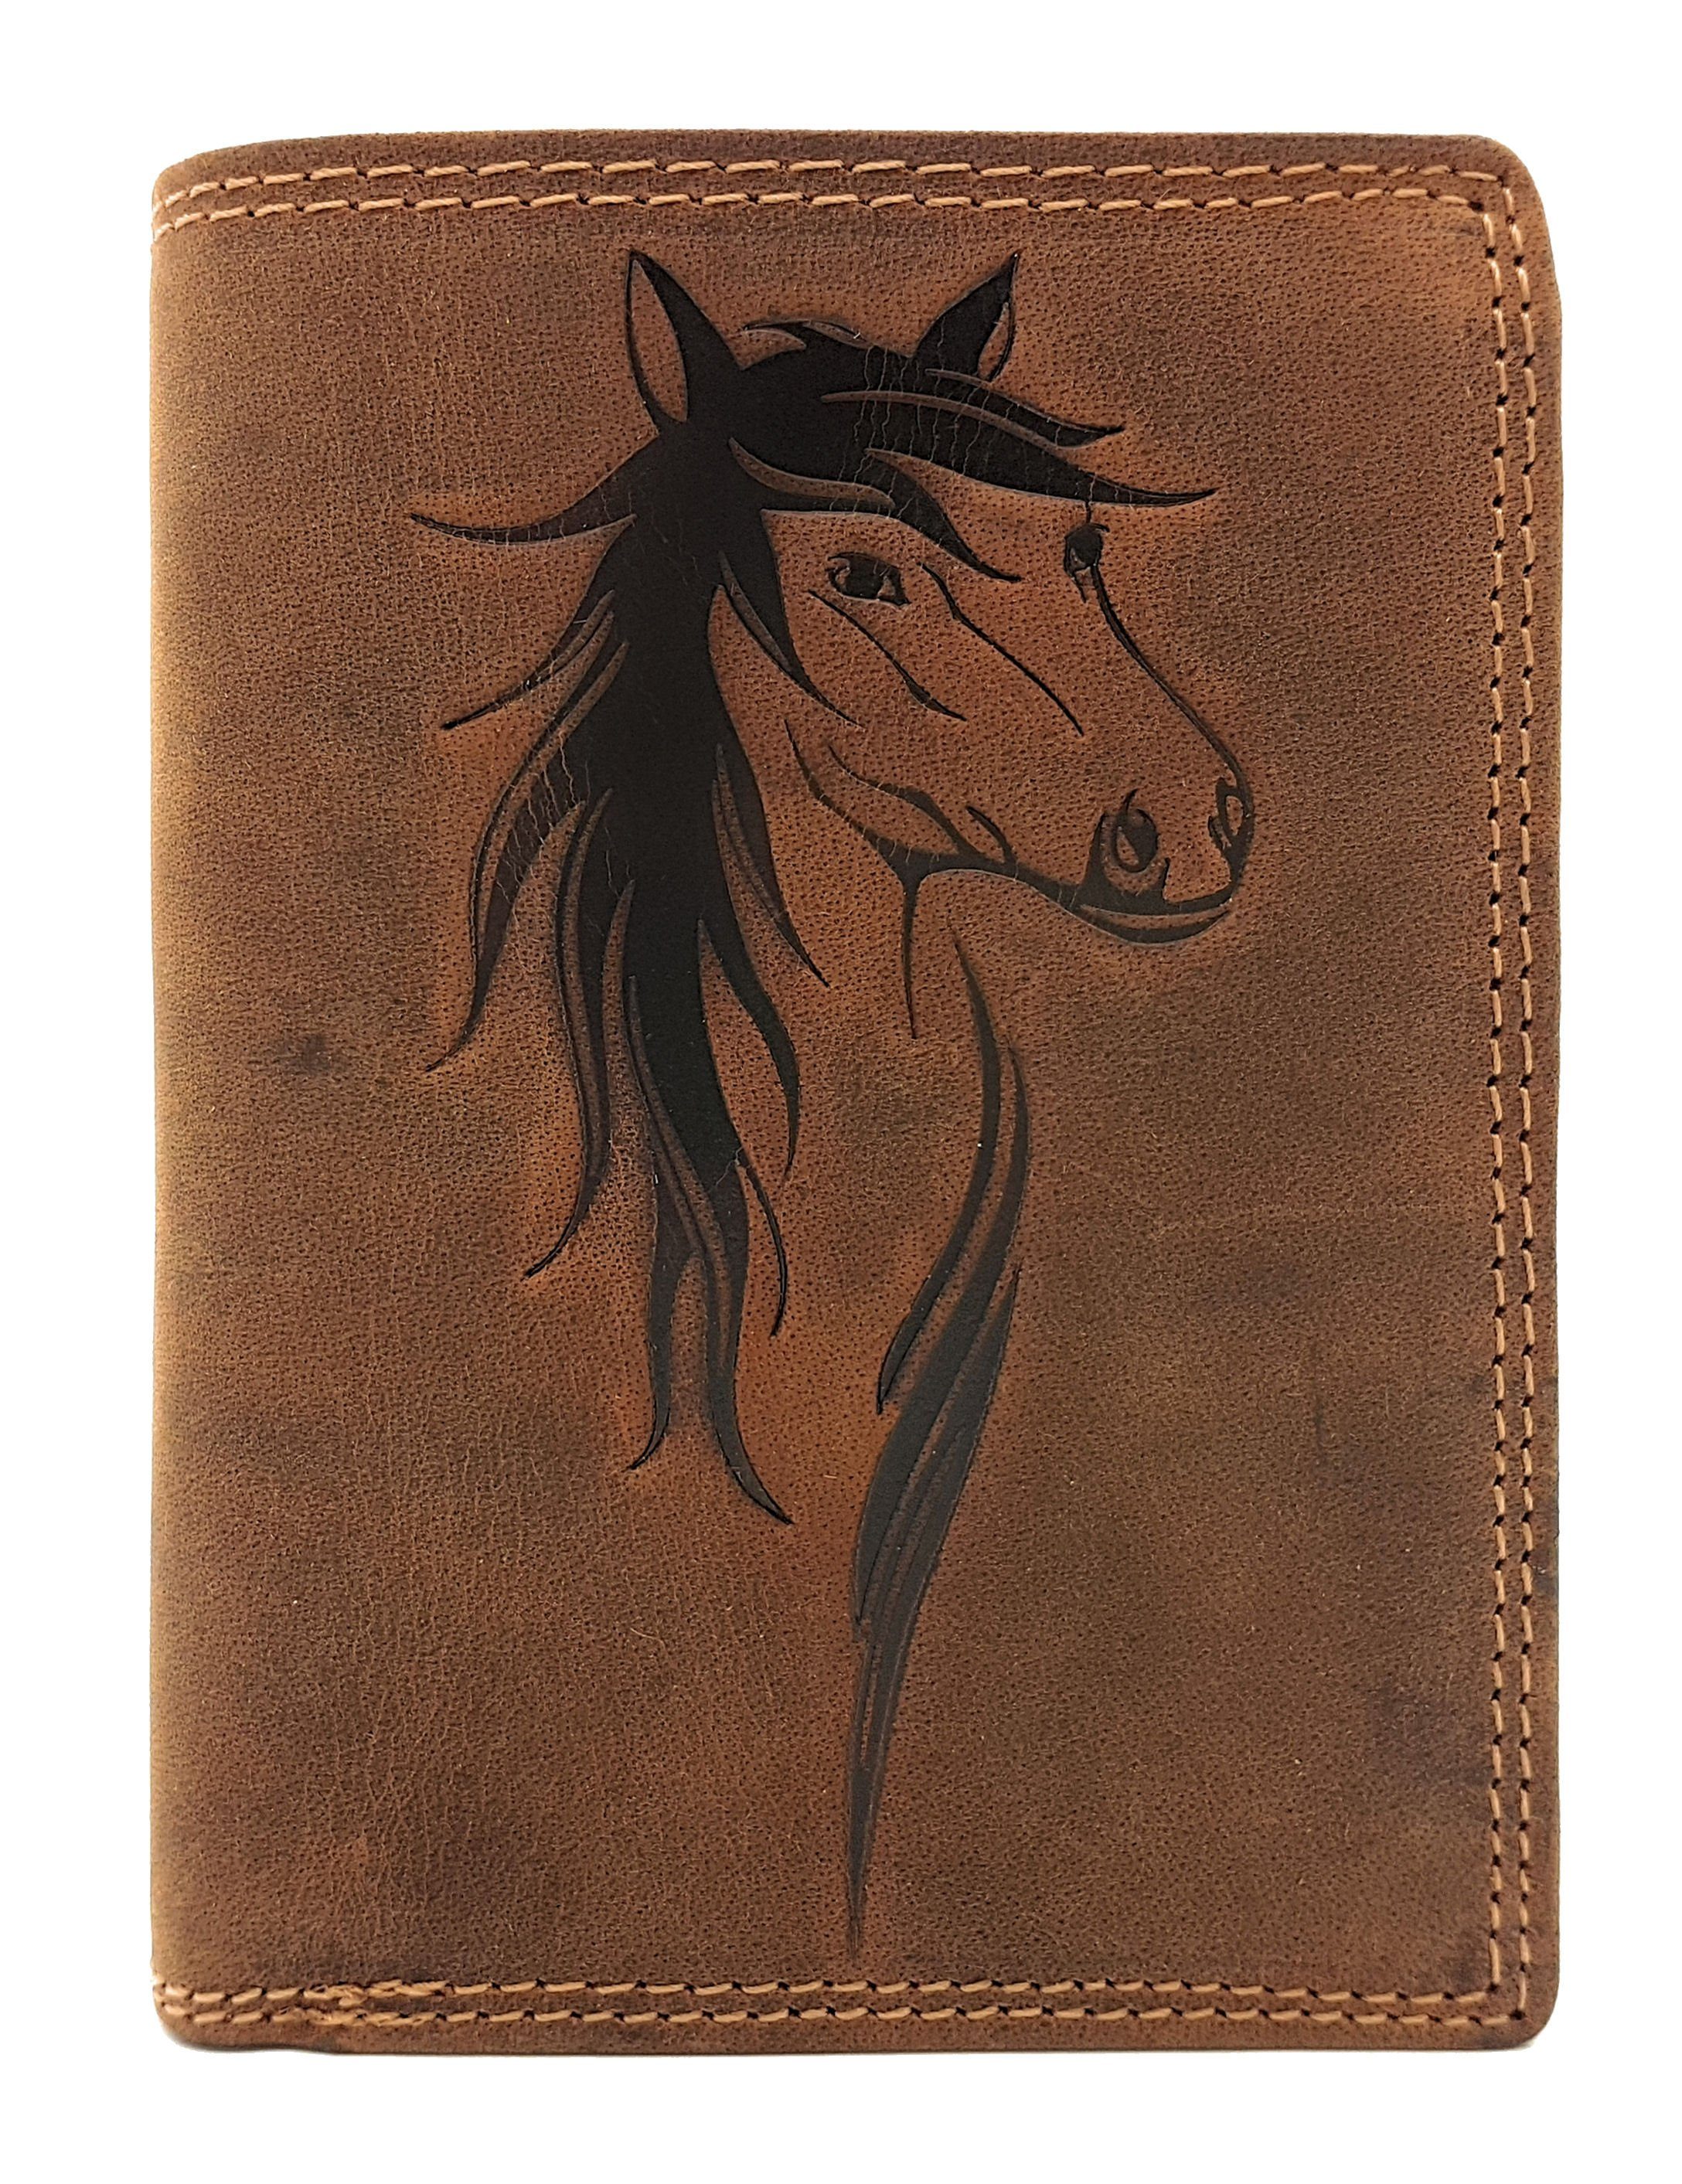 JOCKEY CLUB Geldbörse echt mit umfangreiche Leder, Pferdemotiv, Ausstattung Schutz, RFID Pferd